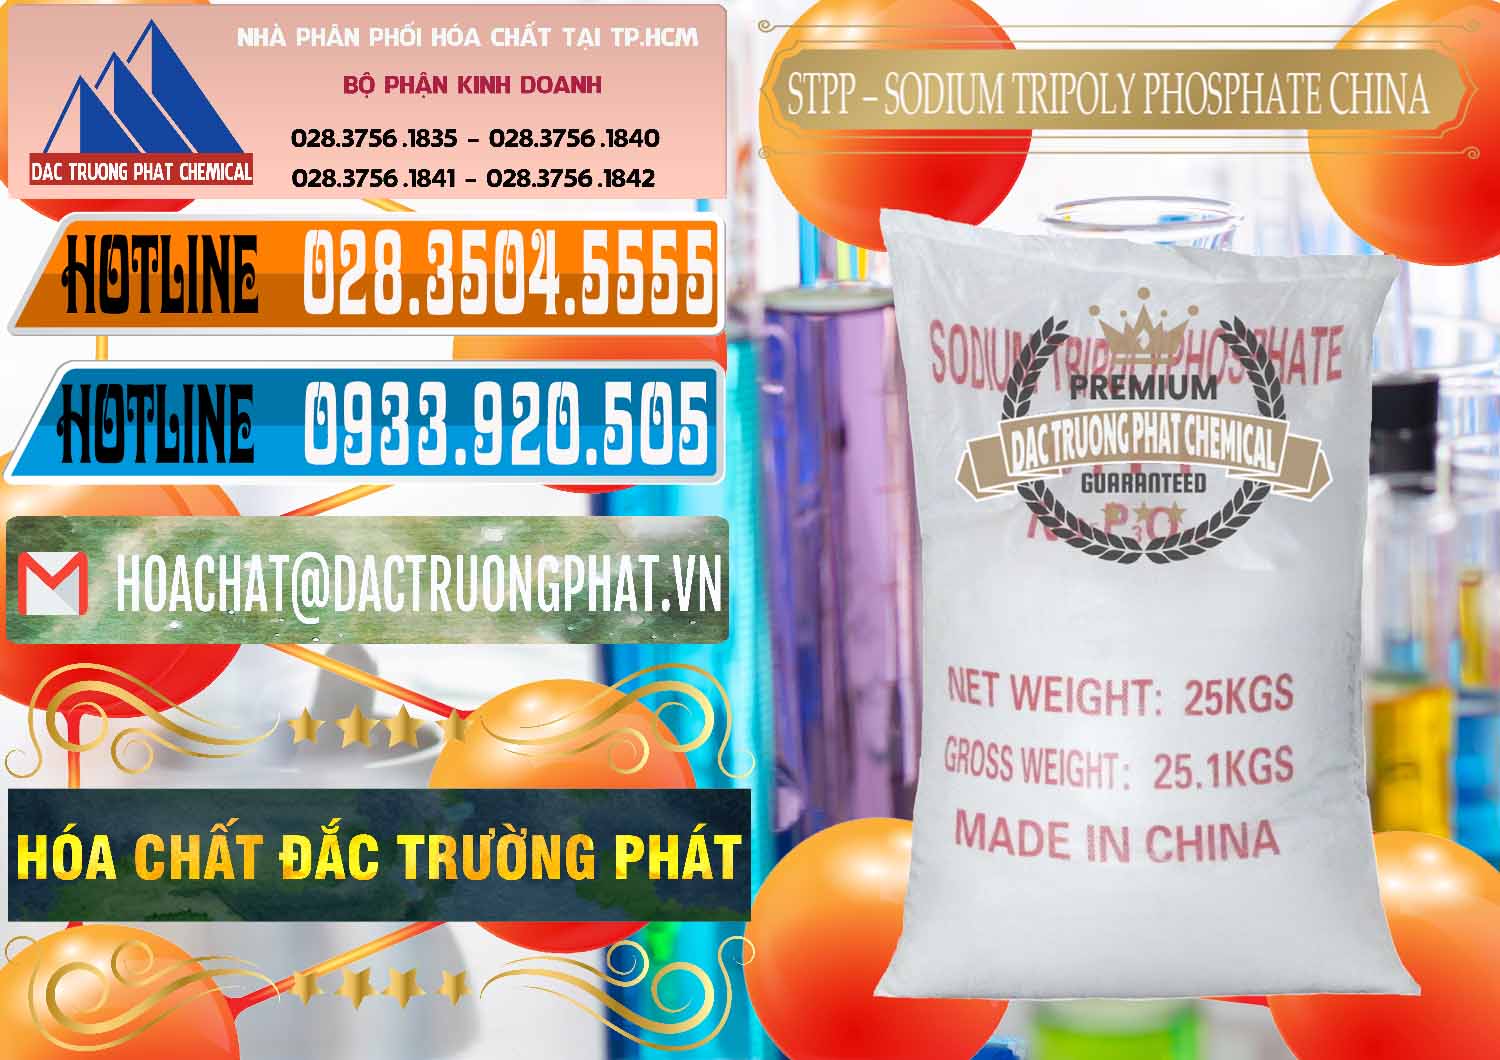 Đơn vị chuyên phân phối - bán Sodium Tripoly Phosphate - STPP 96% Chữ Đỏ Trung Quốc China - 0155 - Kinh doanh _ phân phối hóa chất tại TP.HCM - stmp.net